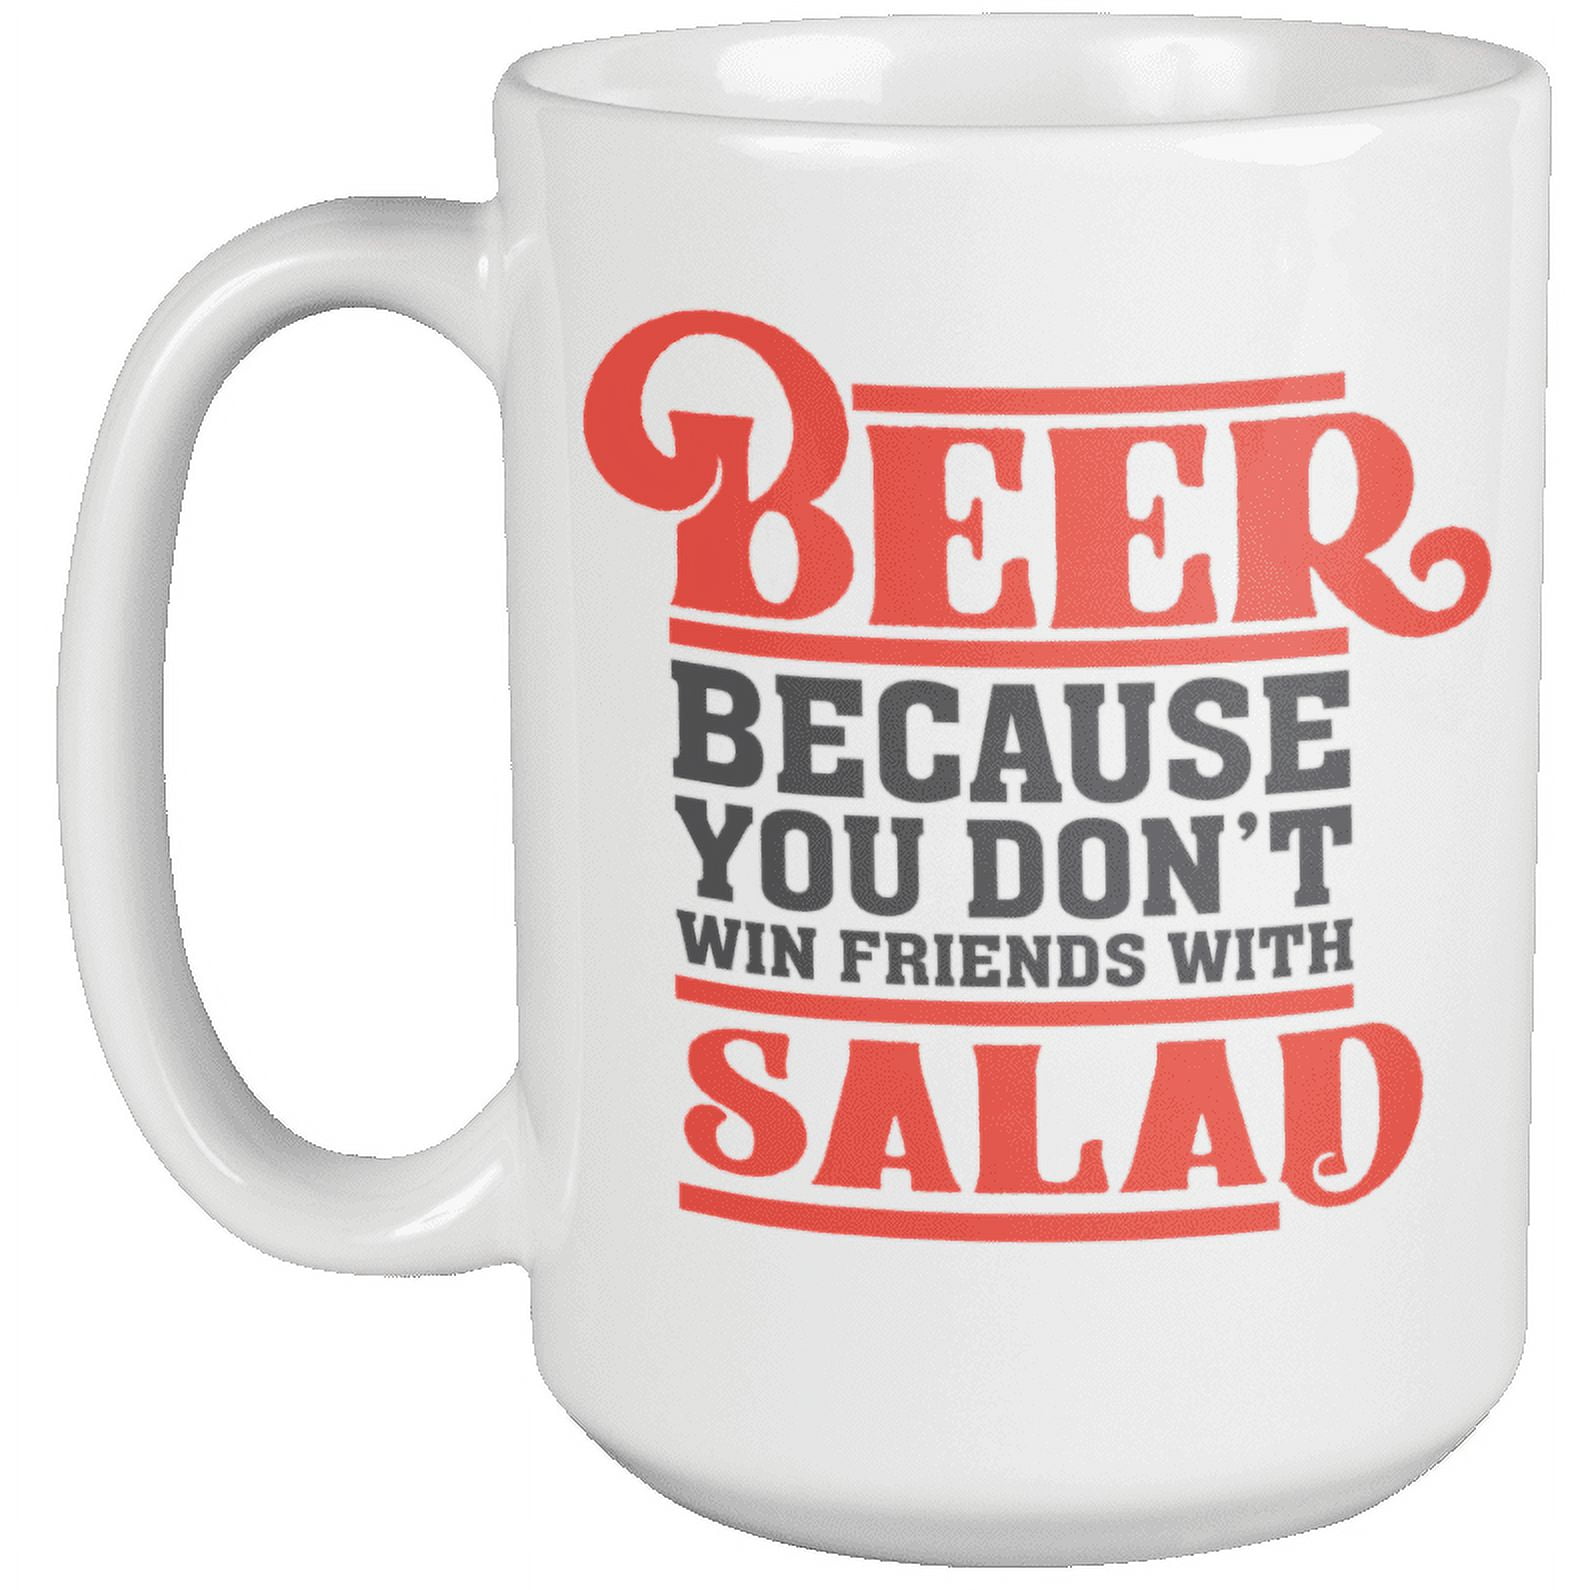 Salad Mug, Salad Gift, Salad Lover Gift, Salad Lover Mug, Funny